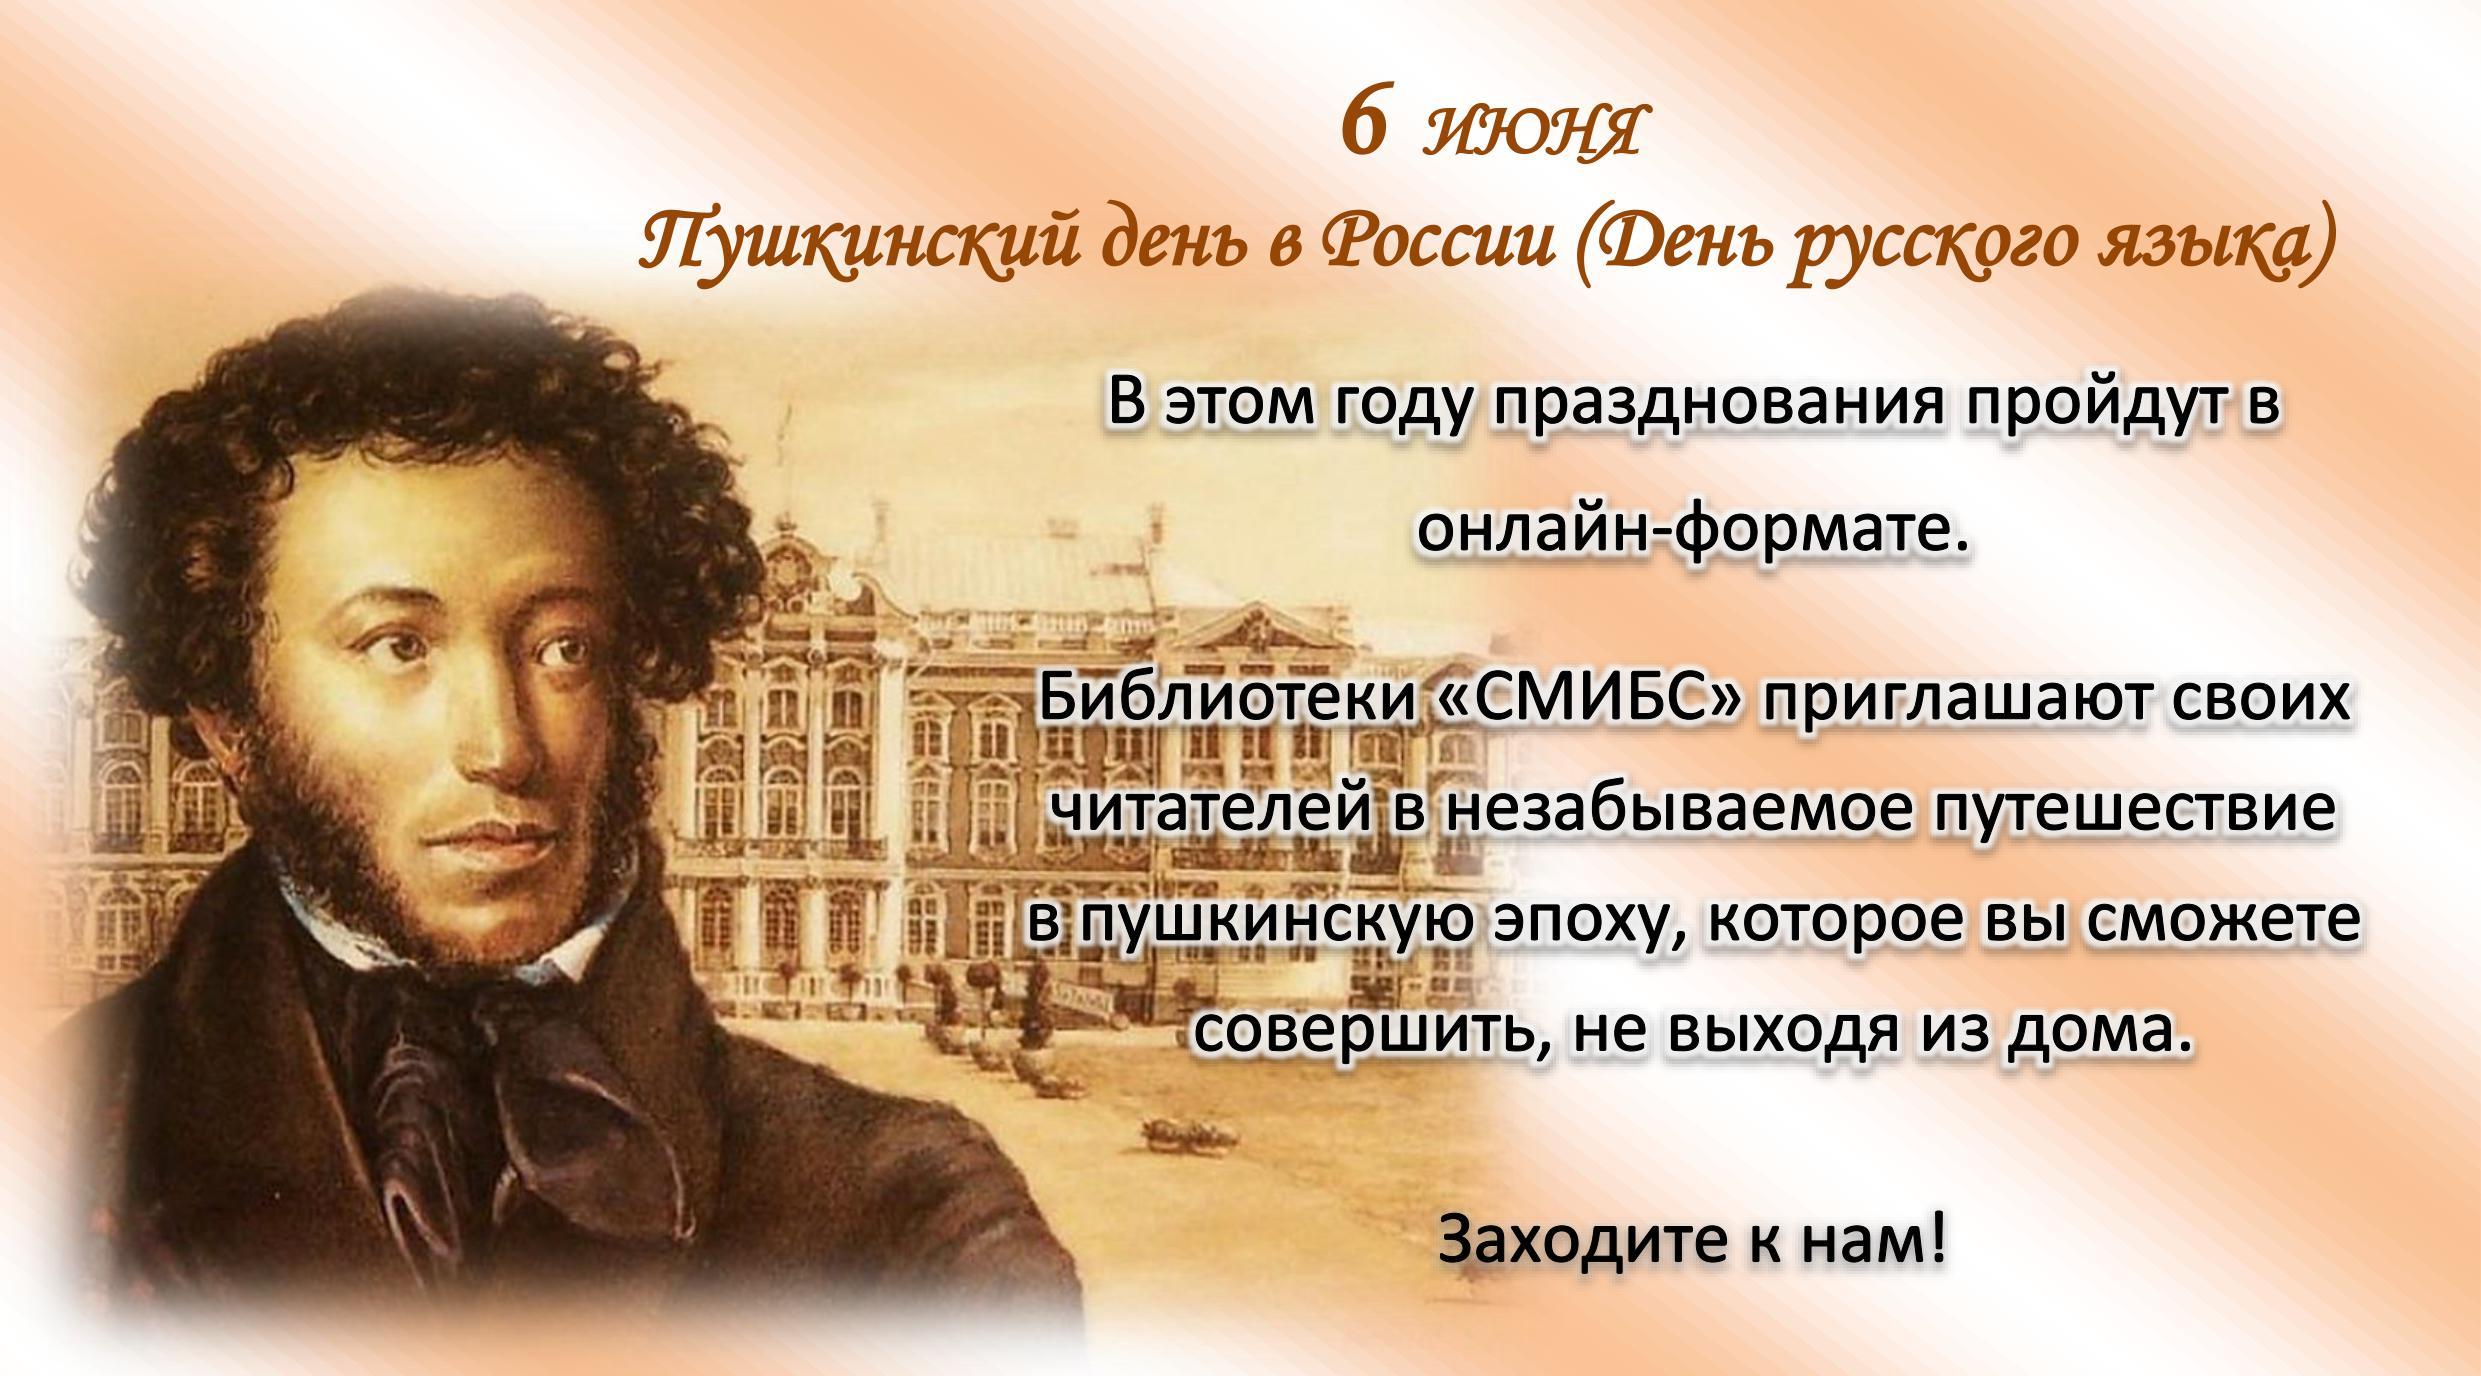 Пушкин 1 июня. 6 Июня день Пушкина и день русского языка. 6 Июня день рождения Пушкина Пушкинский день.